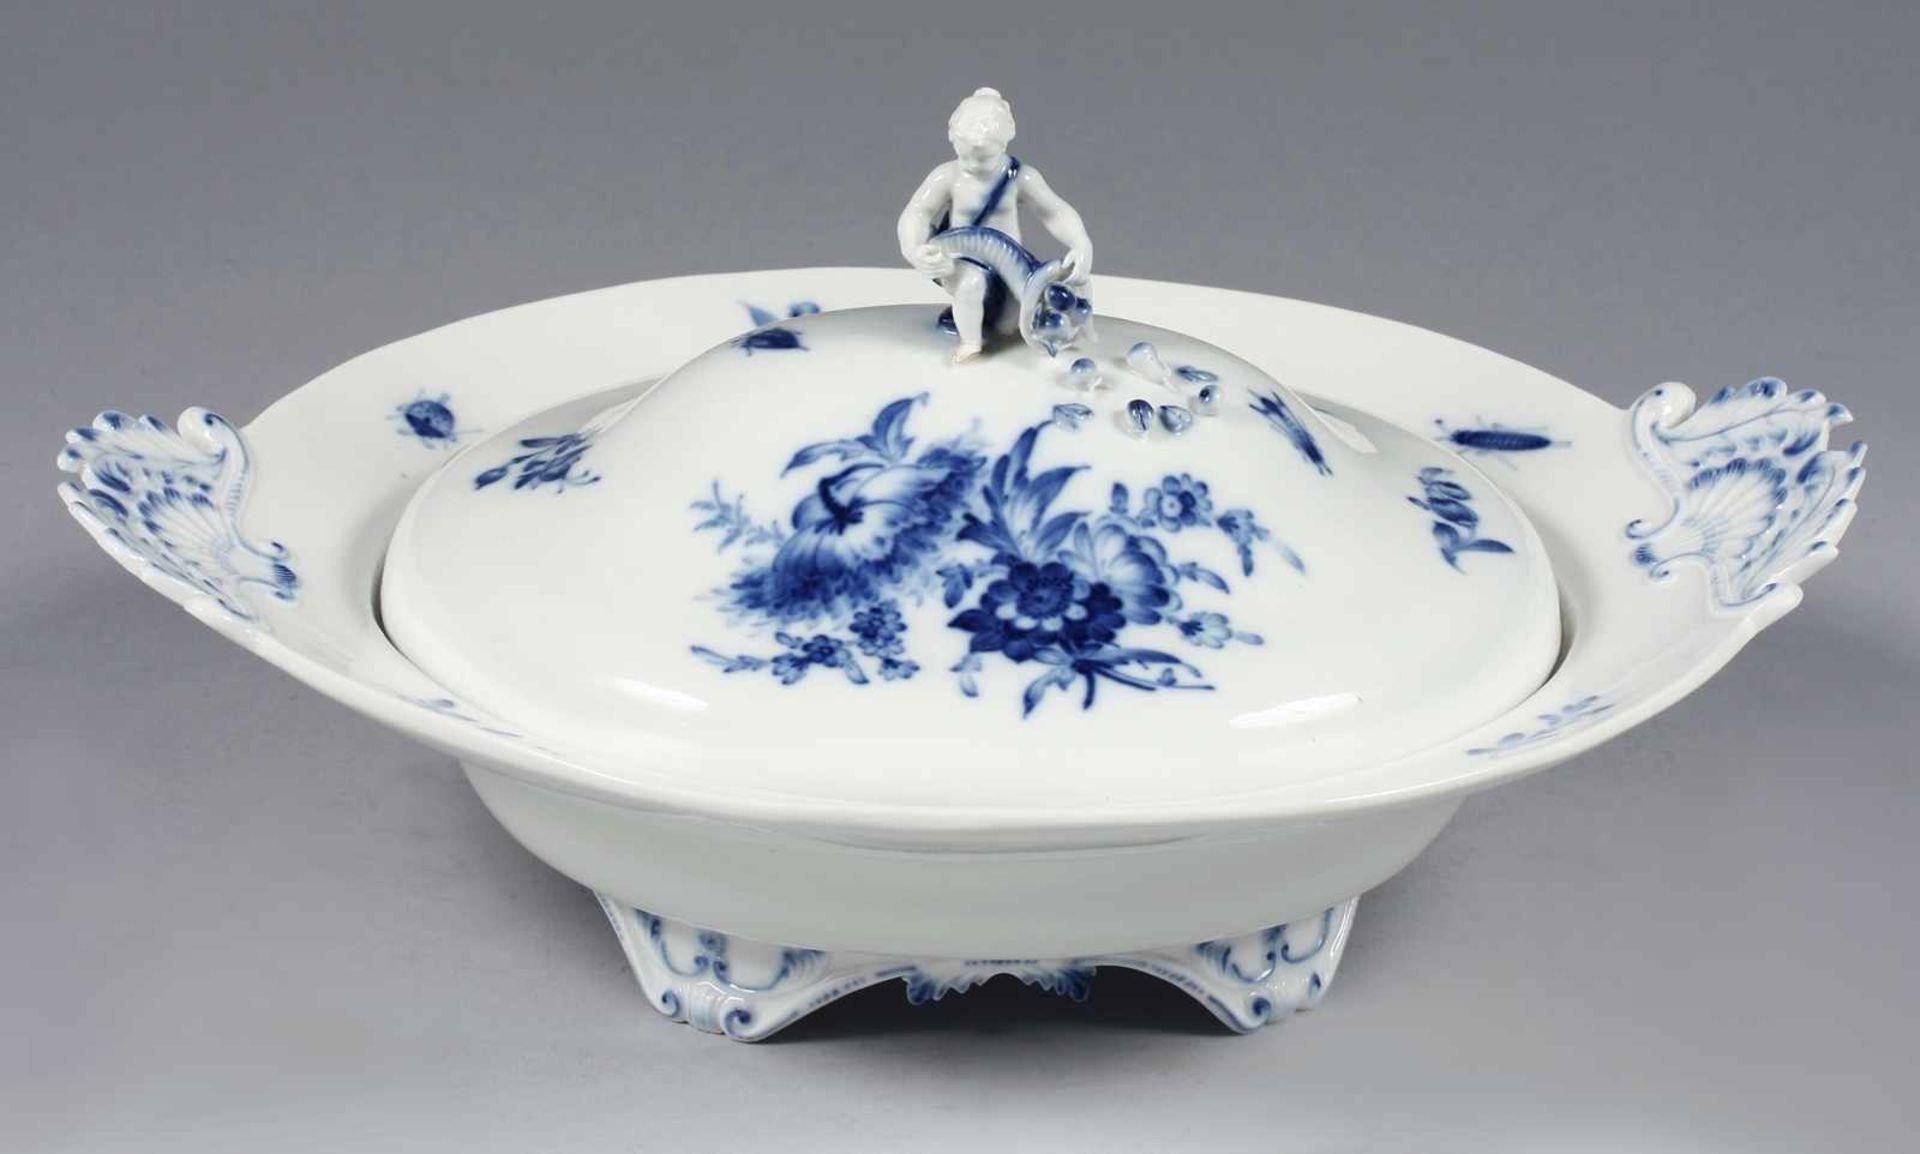 Deckelschüssel "Blaue Blume mit Insekten"Weiß, glasiert. Ovale Form mit glattem Rand u. gemuschelten